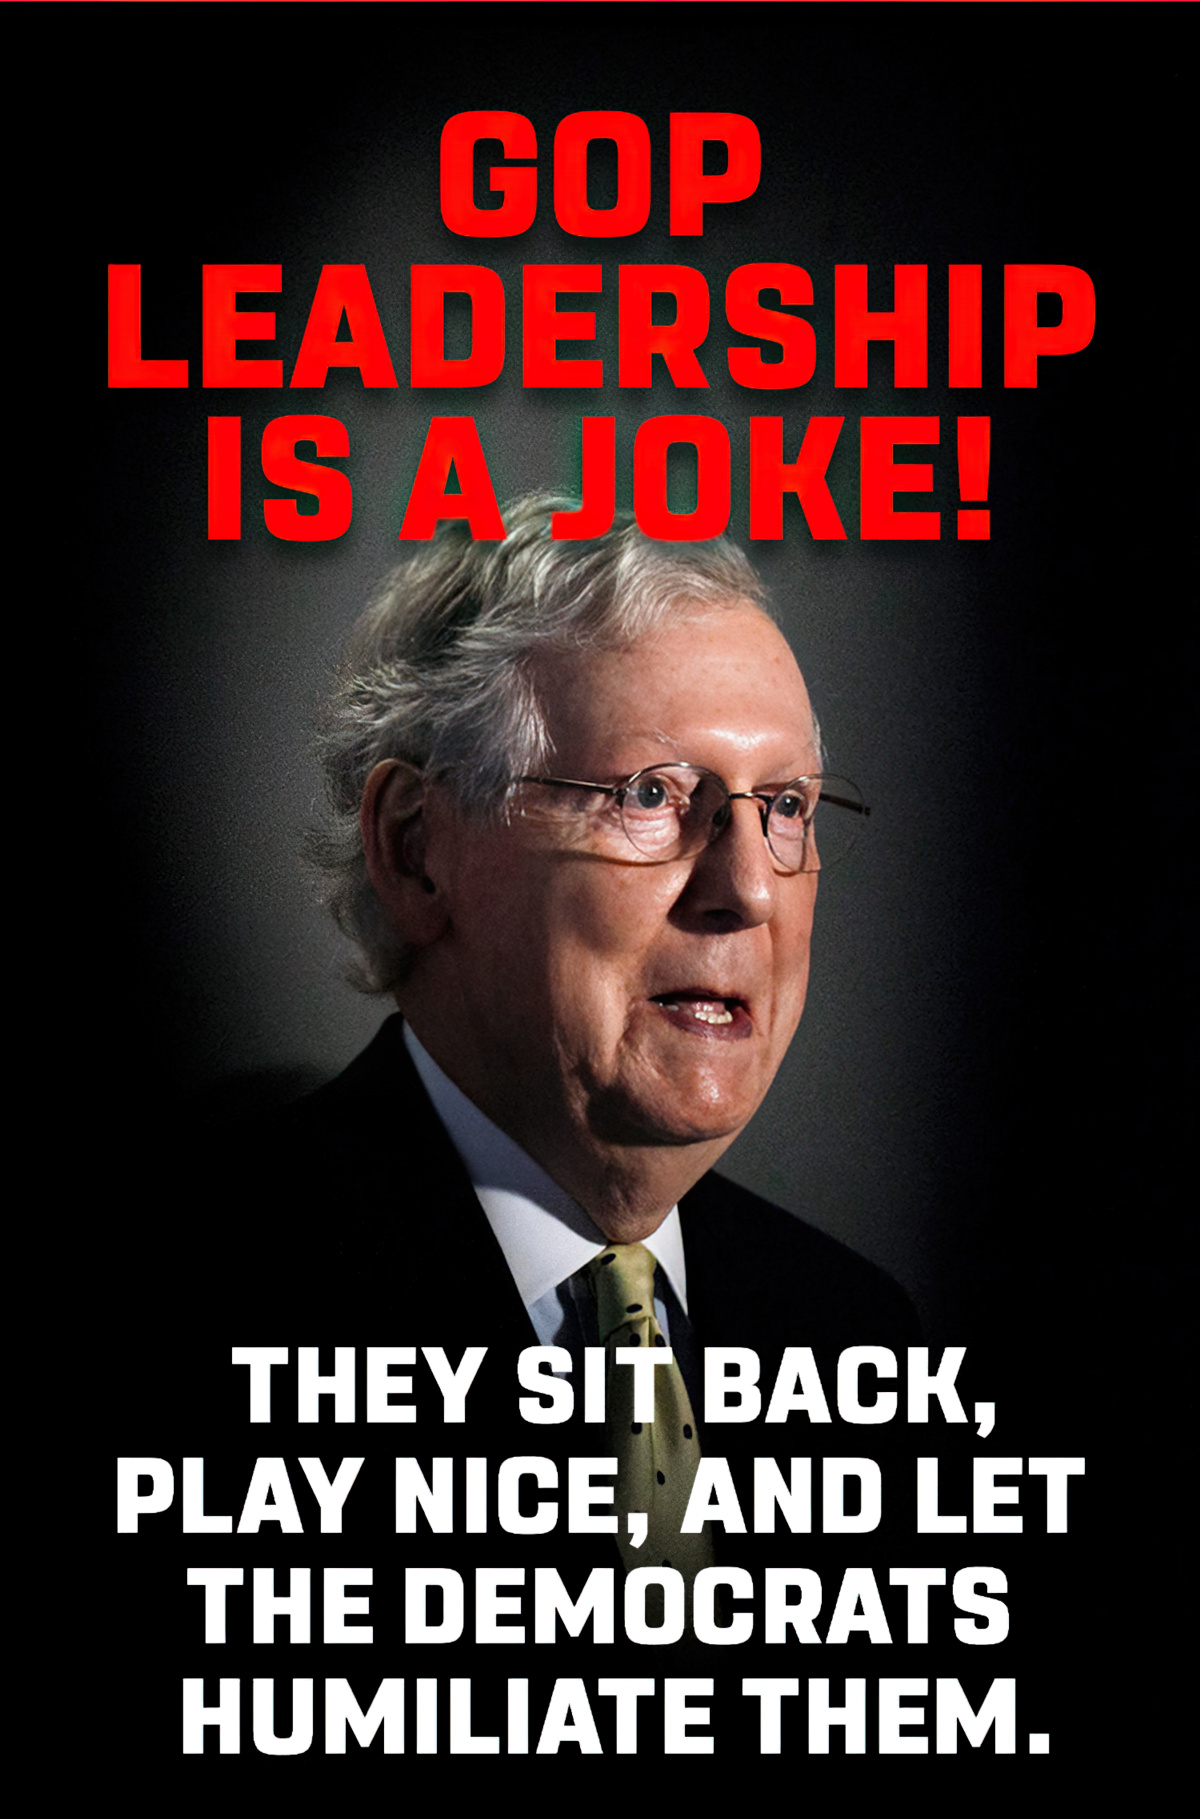 Is GOP Leadership a joke?